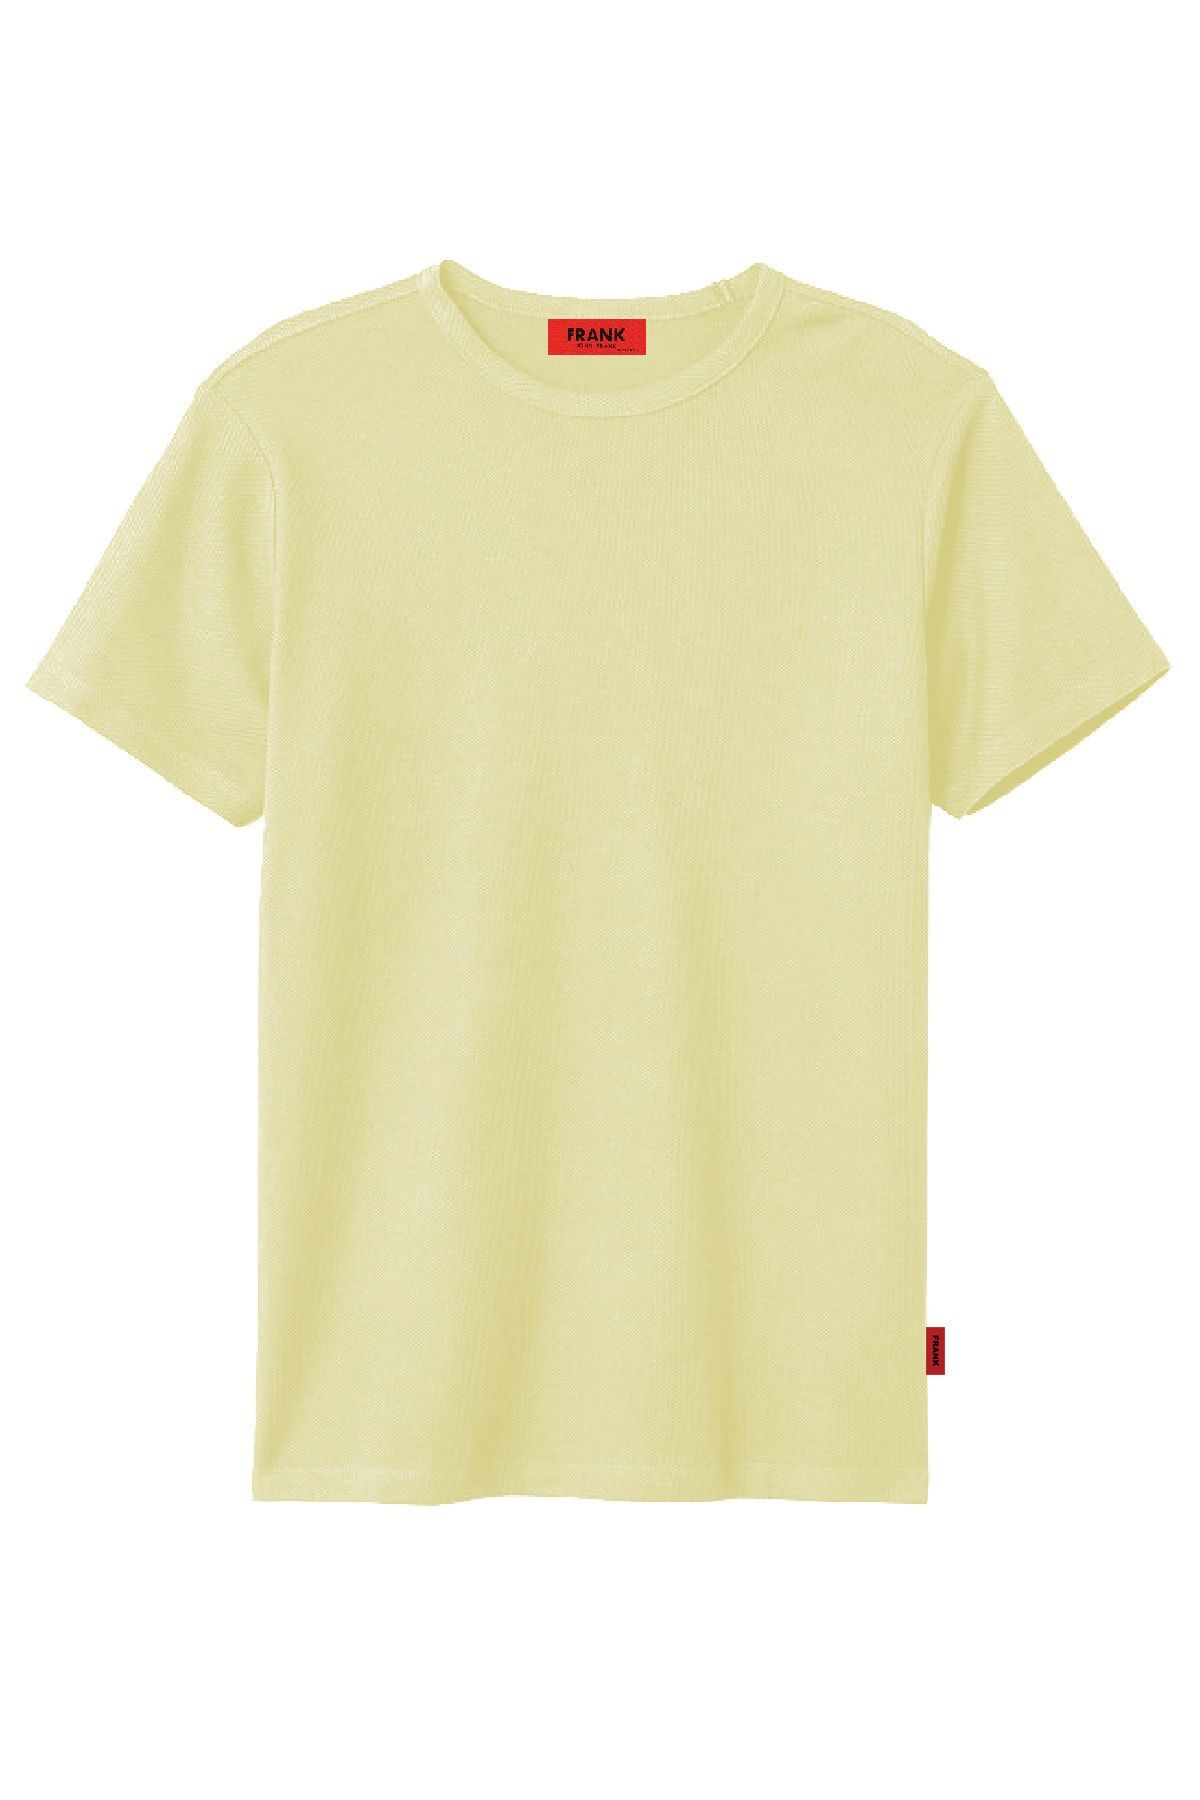 John Frank Erkek Açık Sarı Basic Pike T-shirt